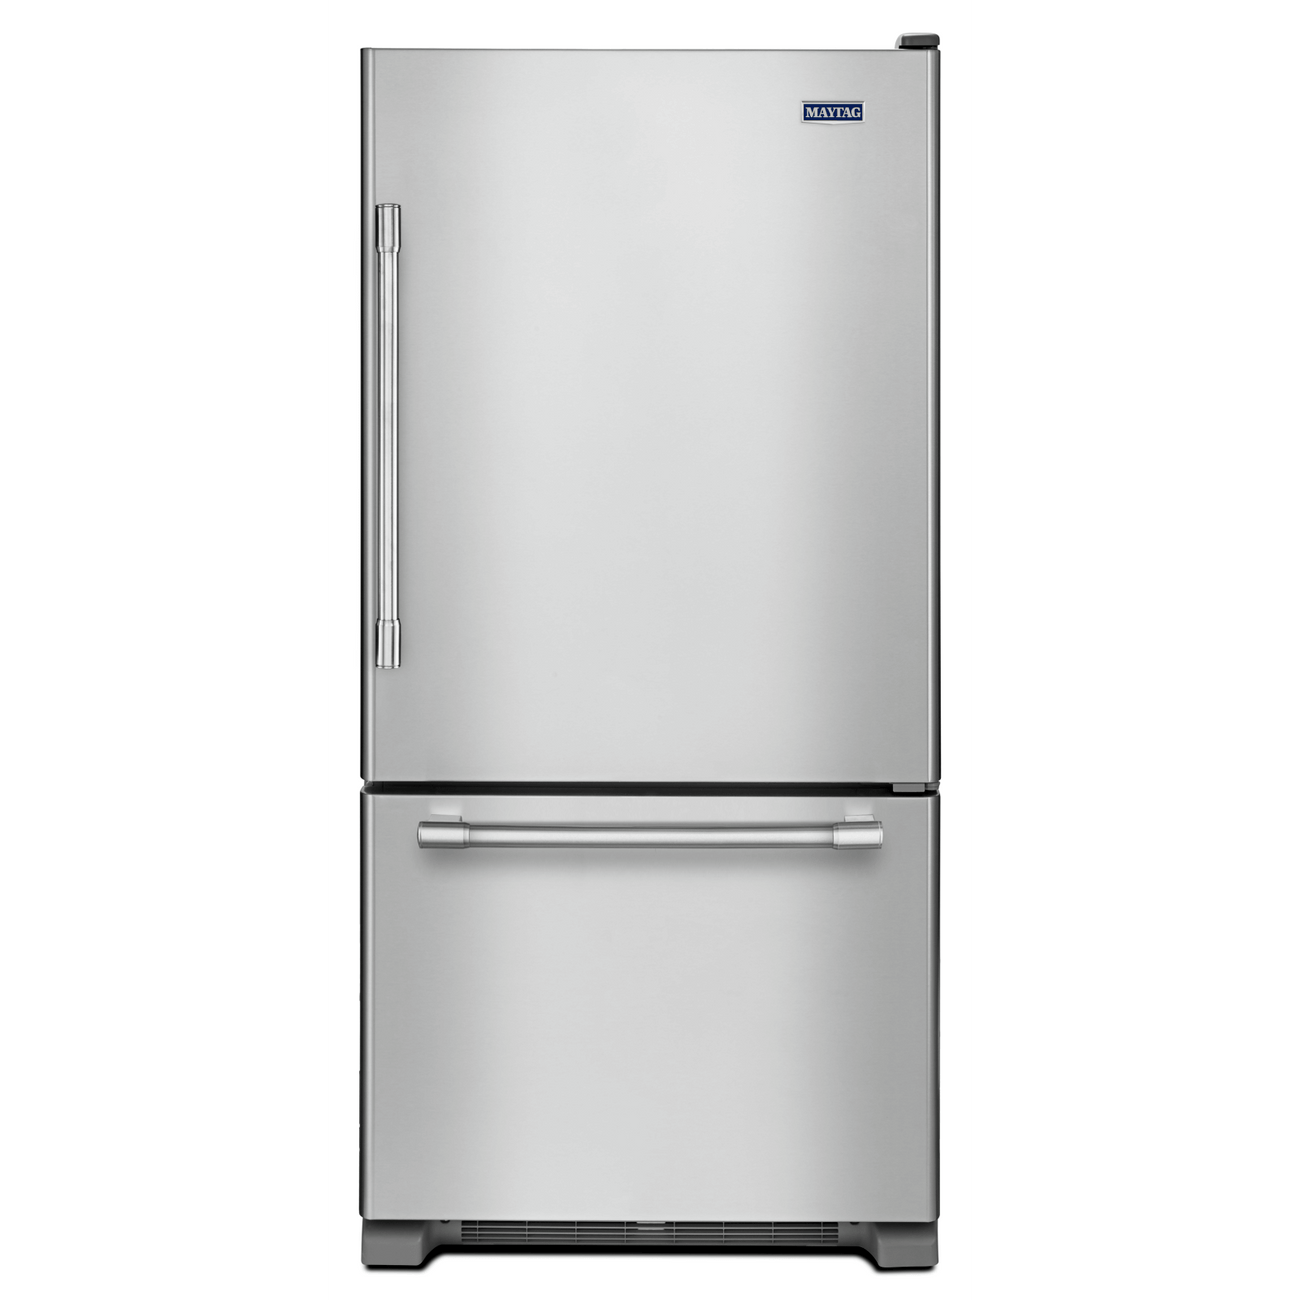 Maytag Bottom Refrigerators